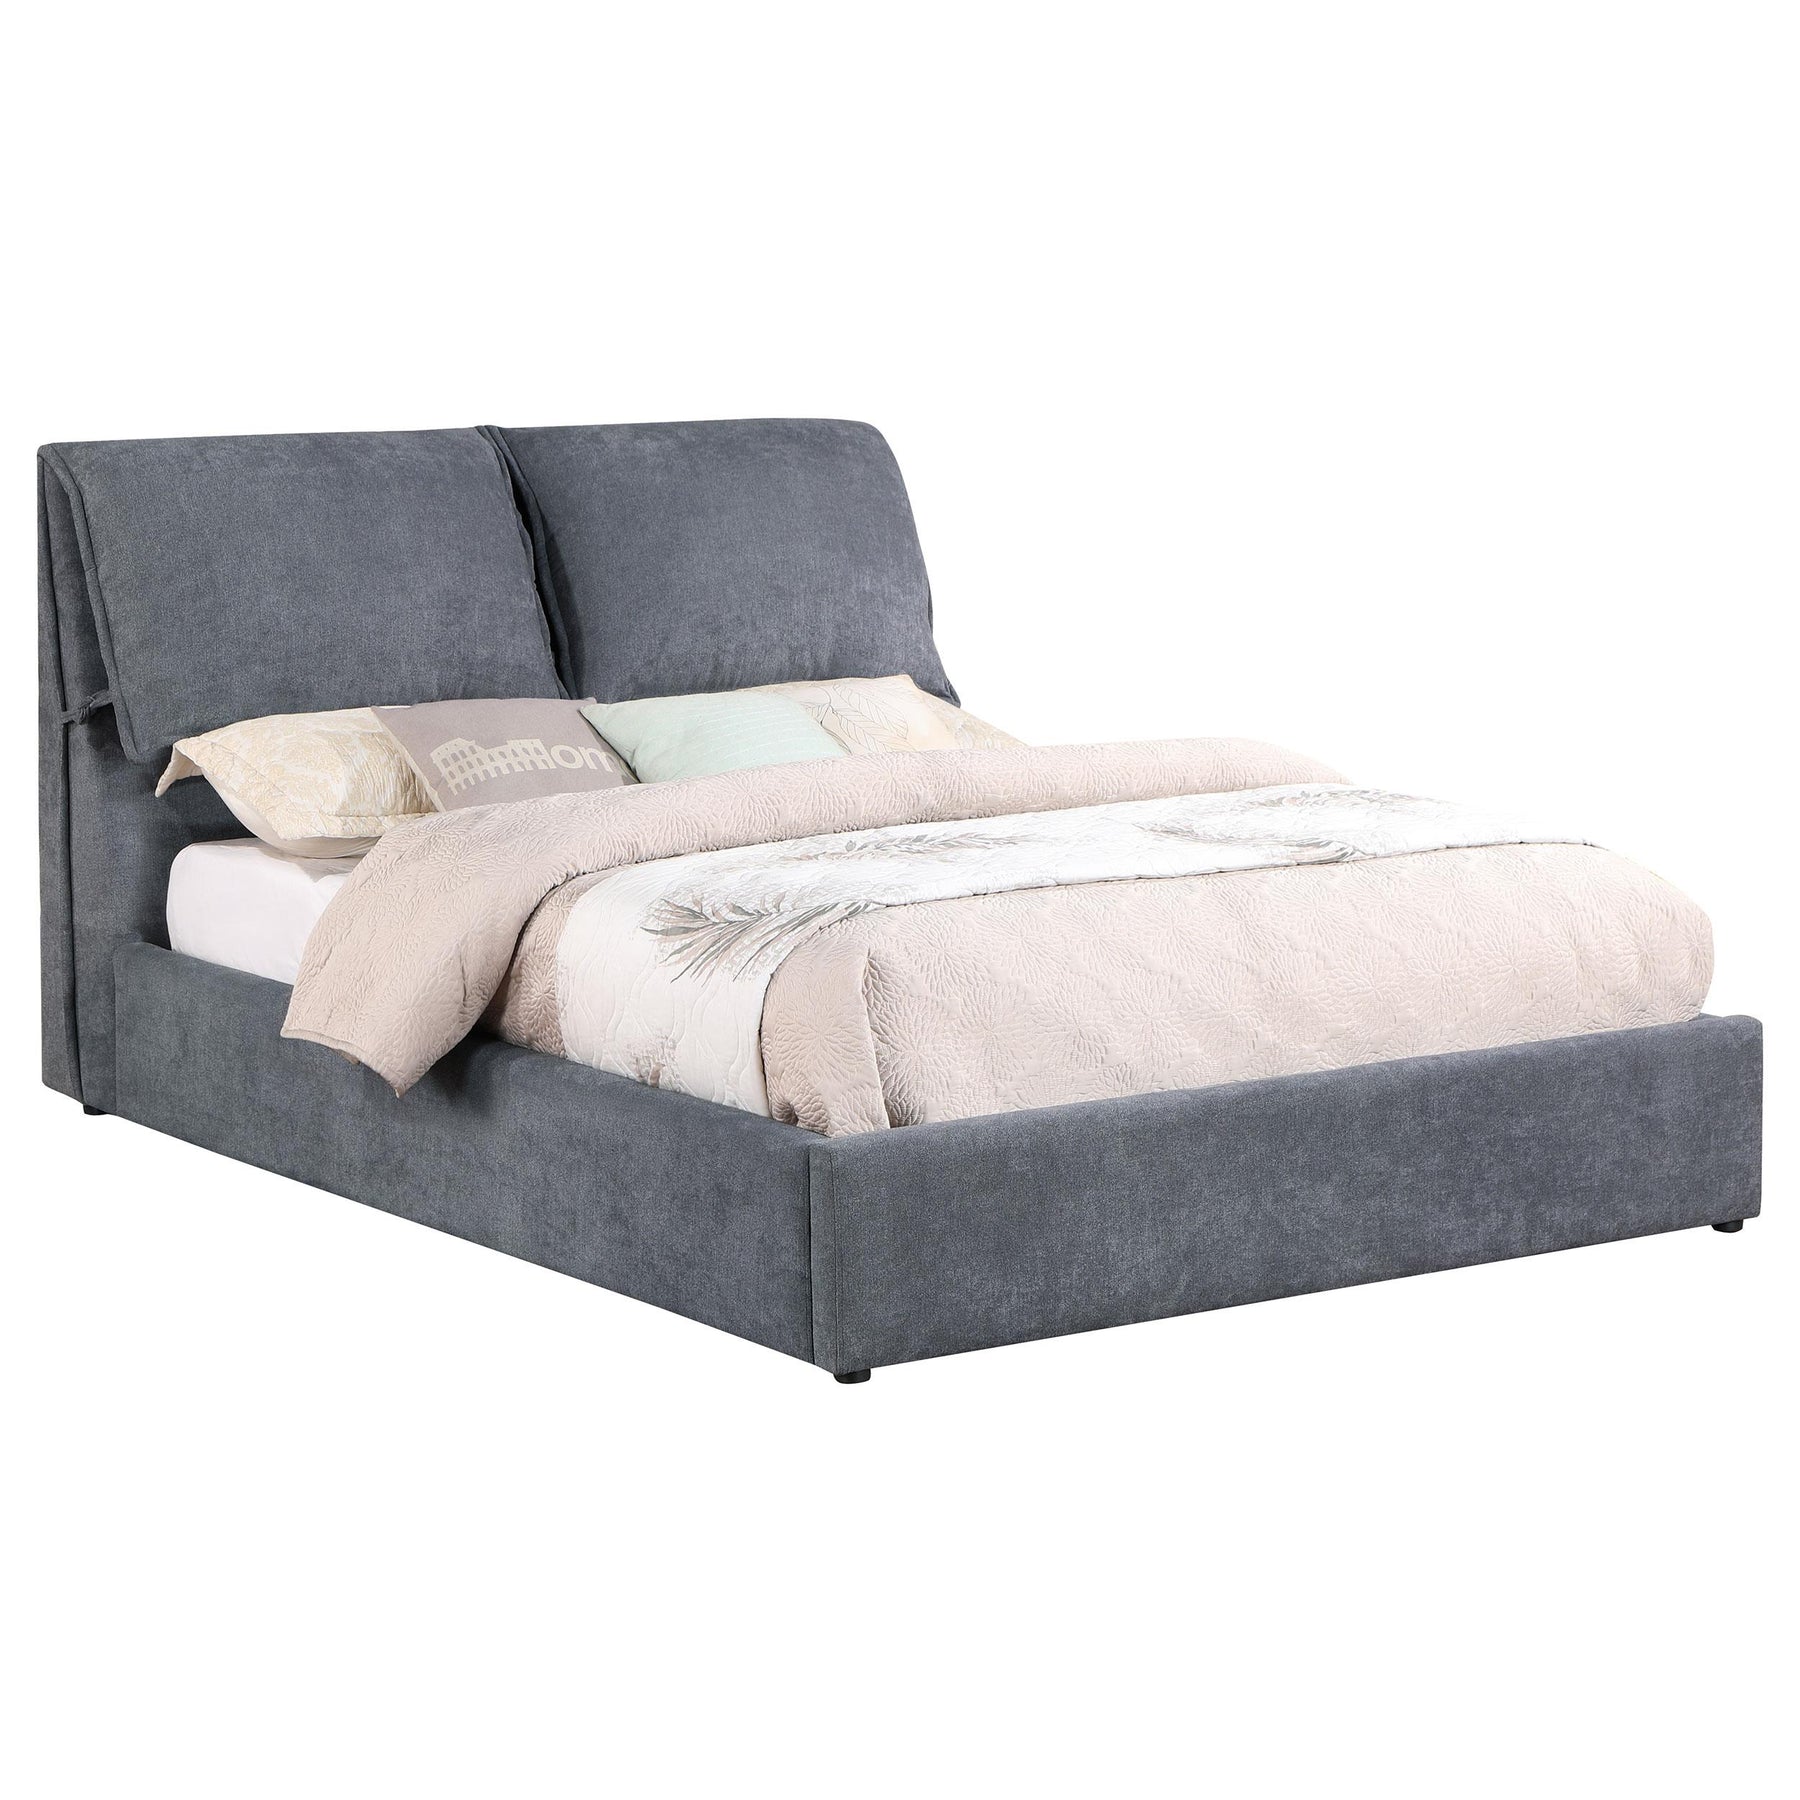 Laurel Upholstered Platform Bed with Pillow Headboard Charcoal Grey Laurel Upholstered Platform Bed with Pillow Headboard Charcoal Grey Half Price Furniture